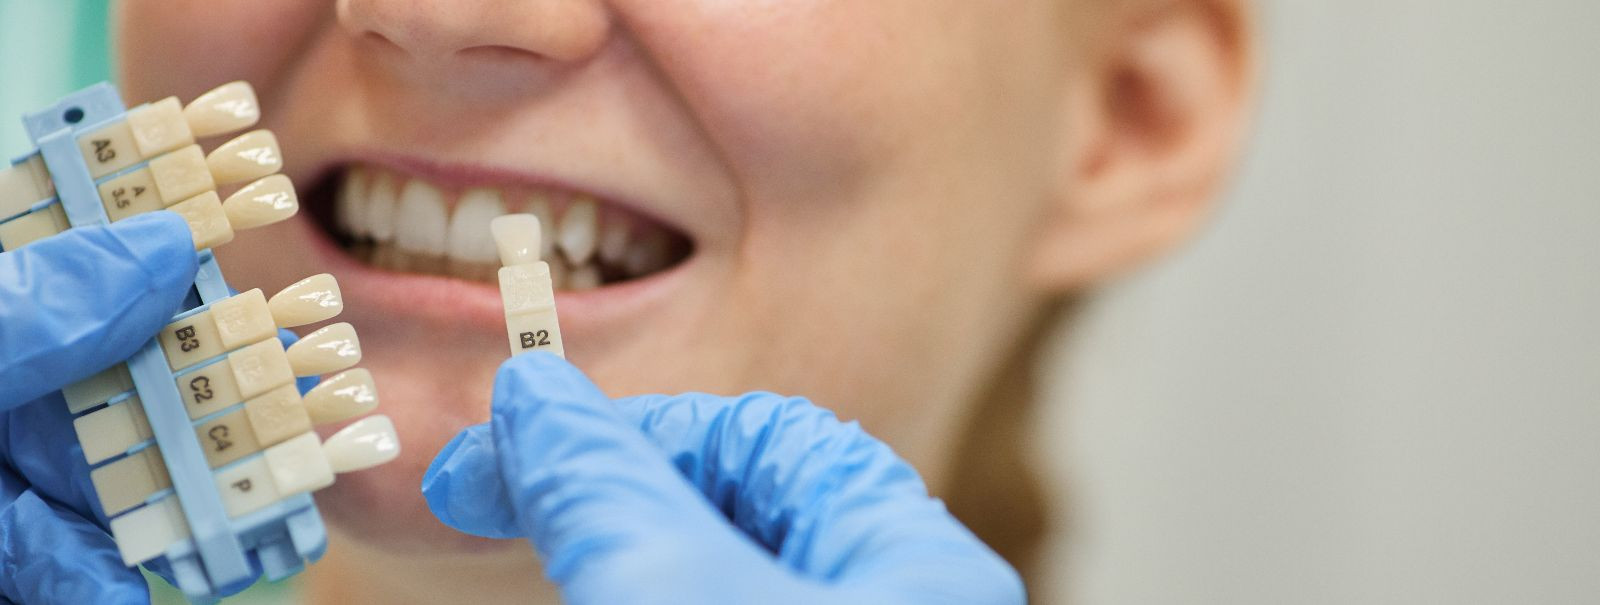 Hambaimplantaadid on kaasaegne lahendus puuduvate hammaste asendamiseks. Need koosnevad titaanist postist, mis kirurgiliselt lõualuusse sisestatakse, toimides k